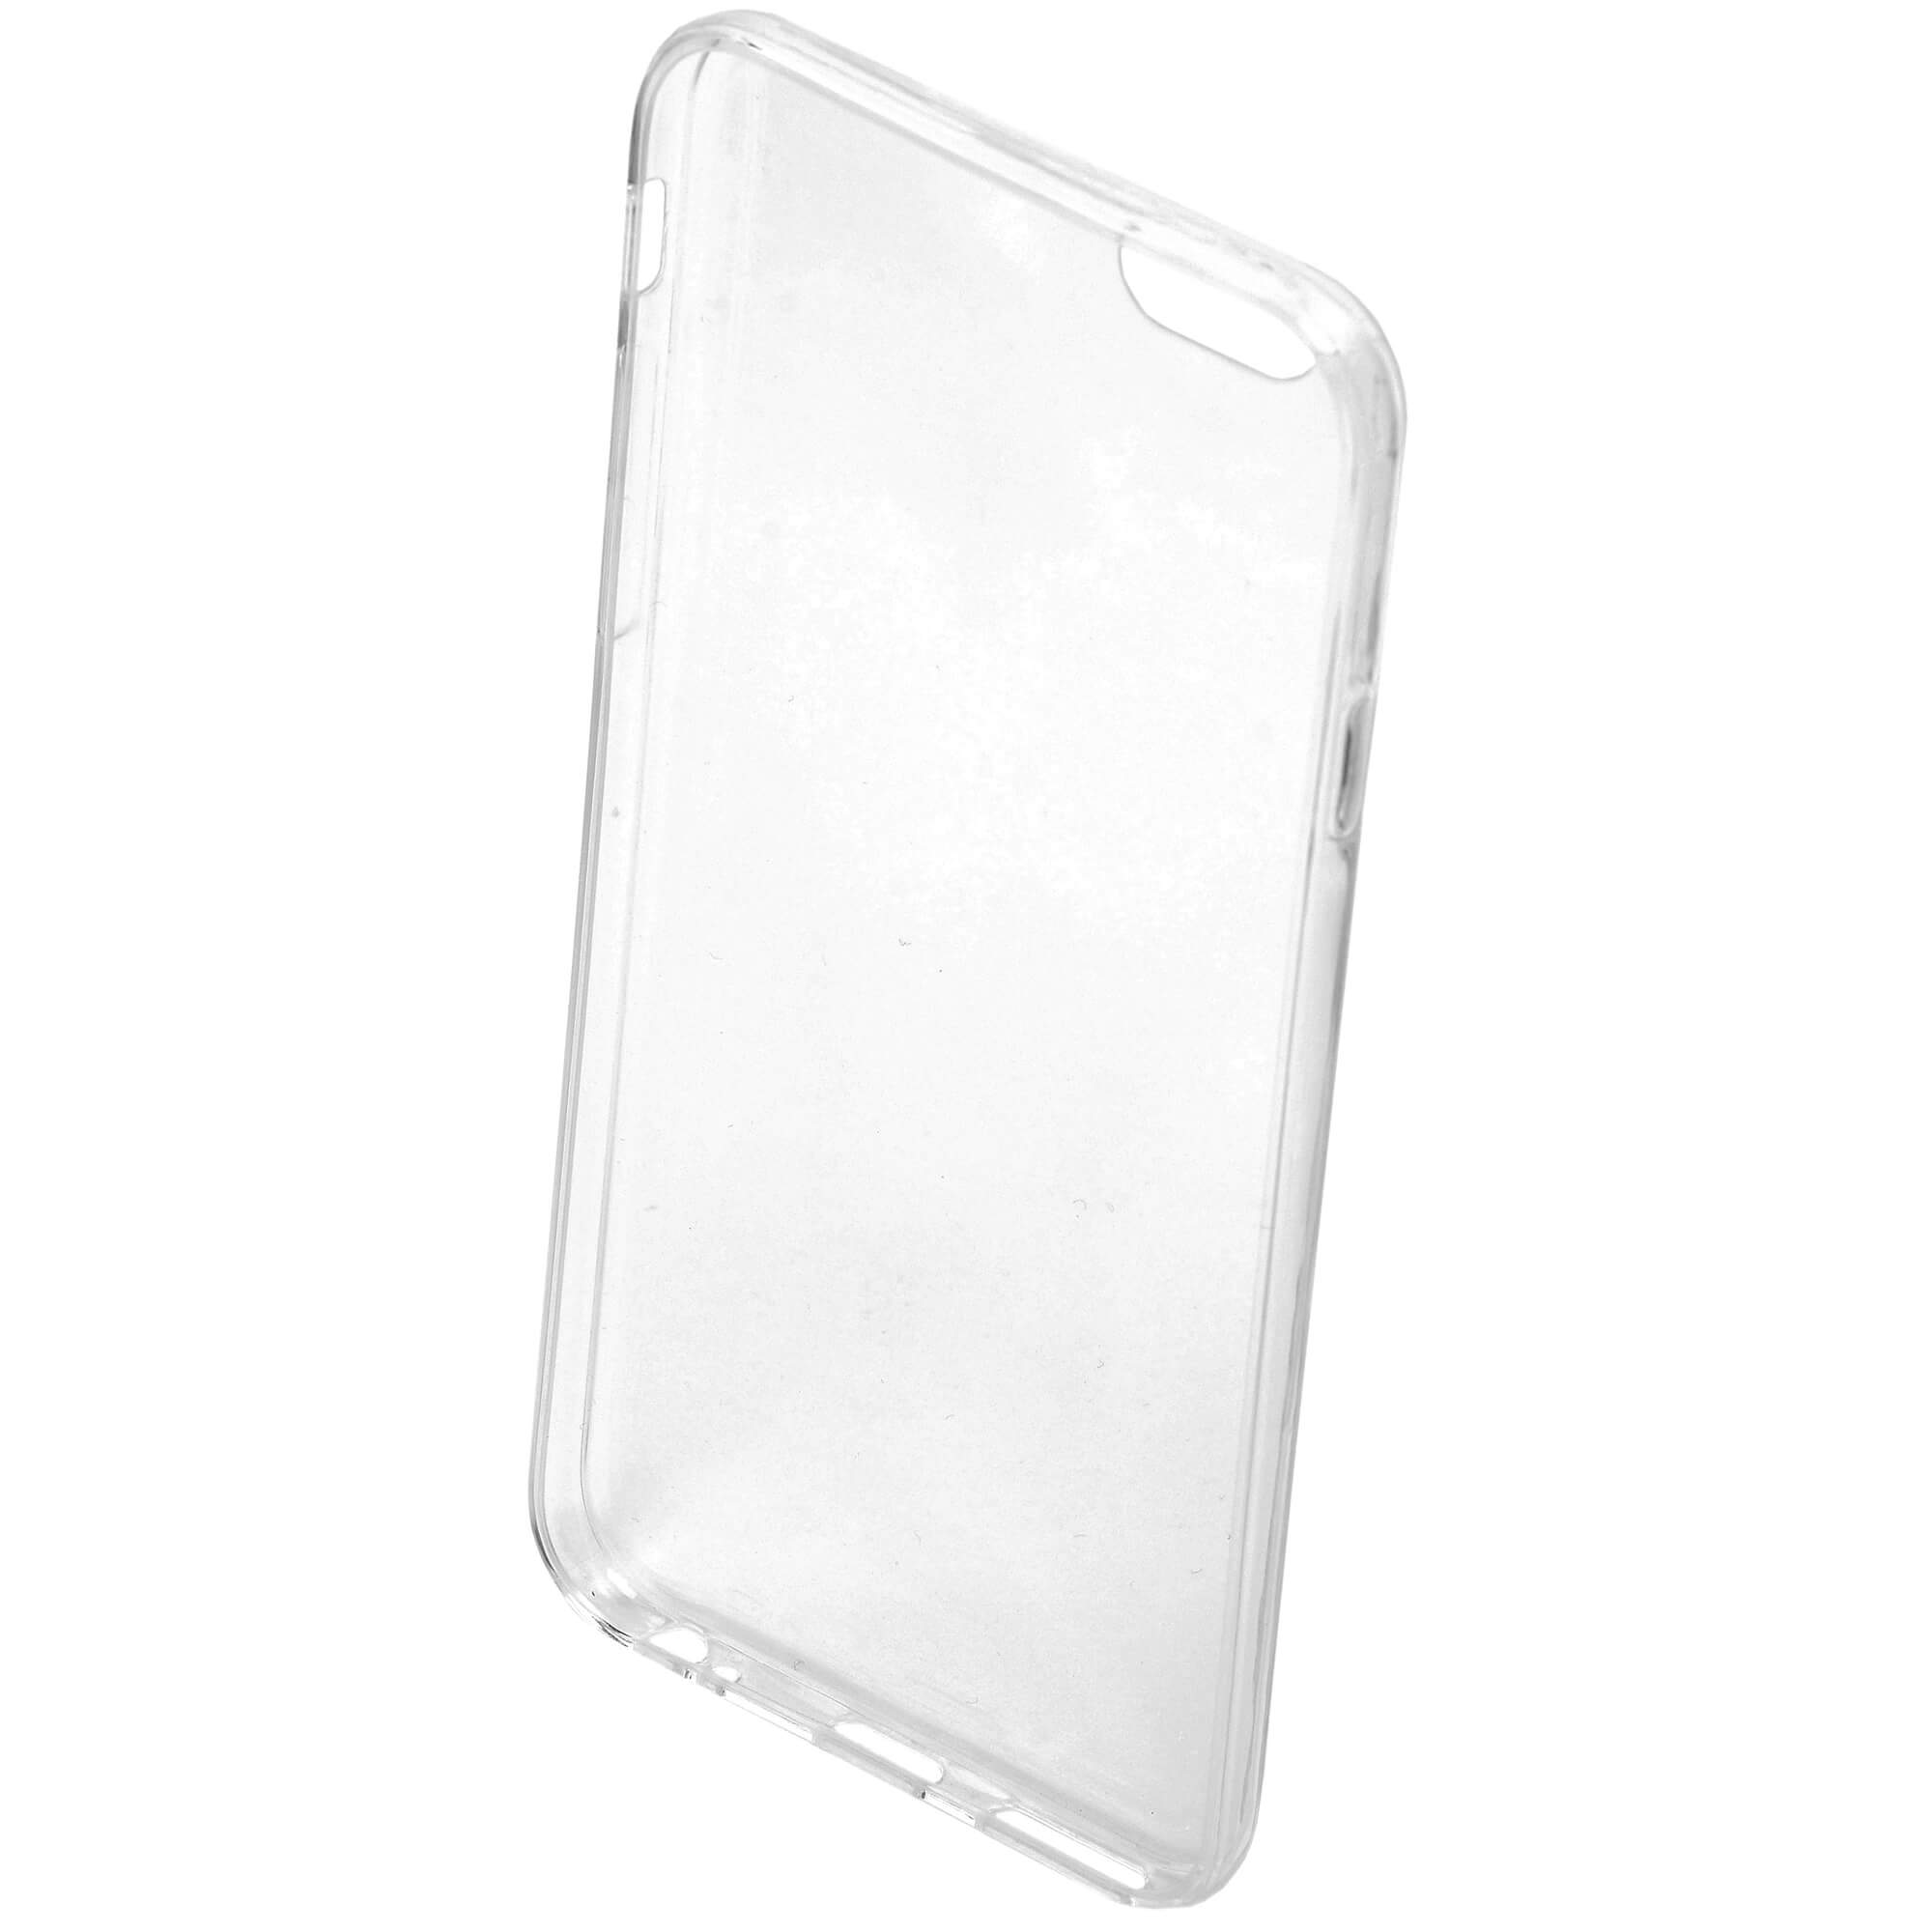  Capac de protectie A+ Case ultraslim pentru Iphone 6/6S, Transparent 